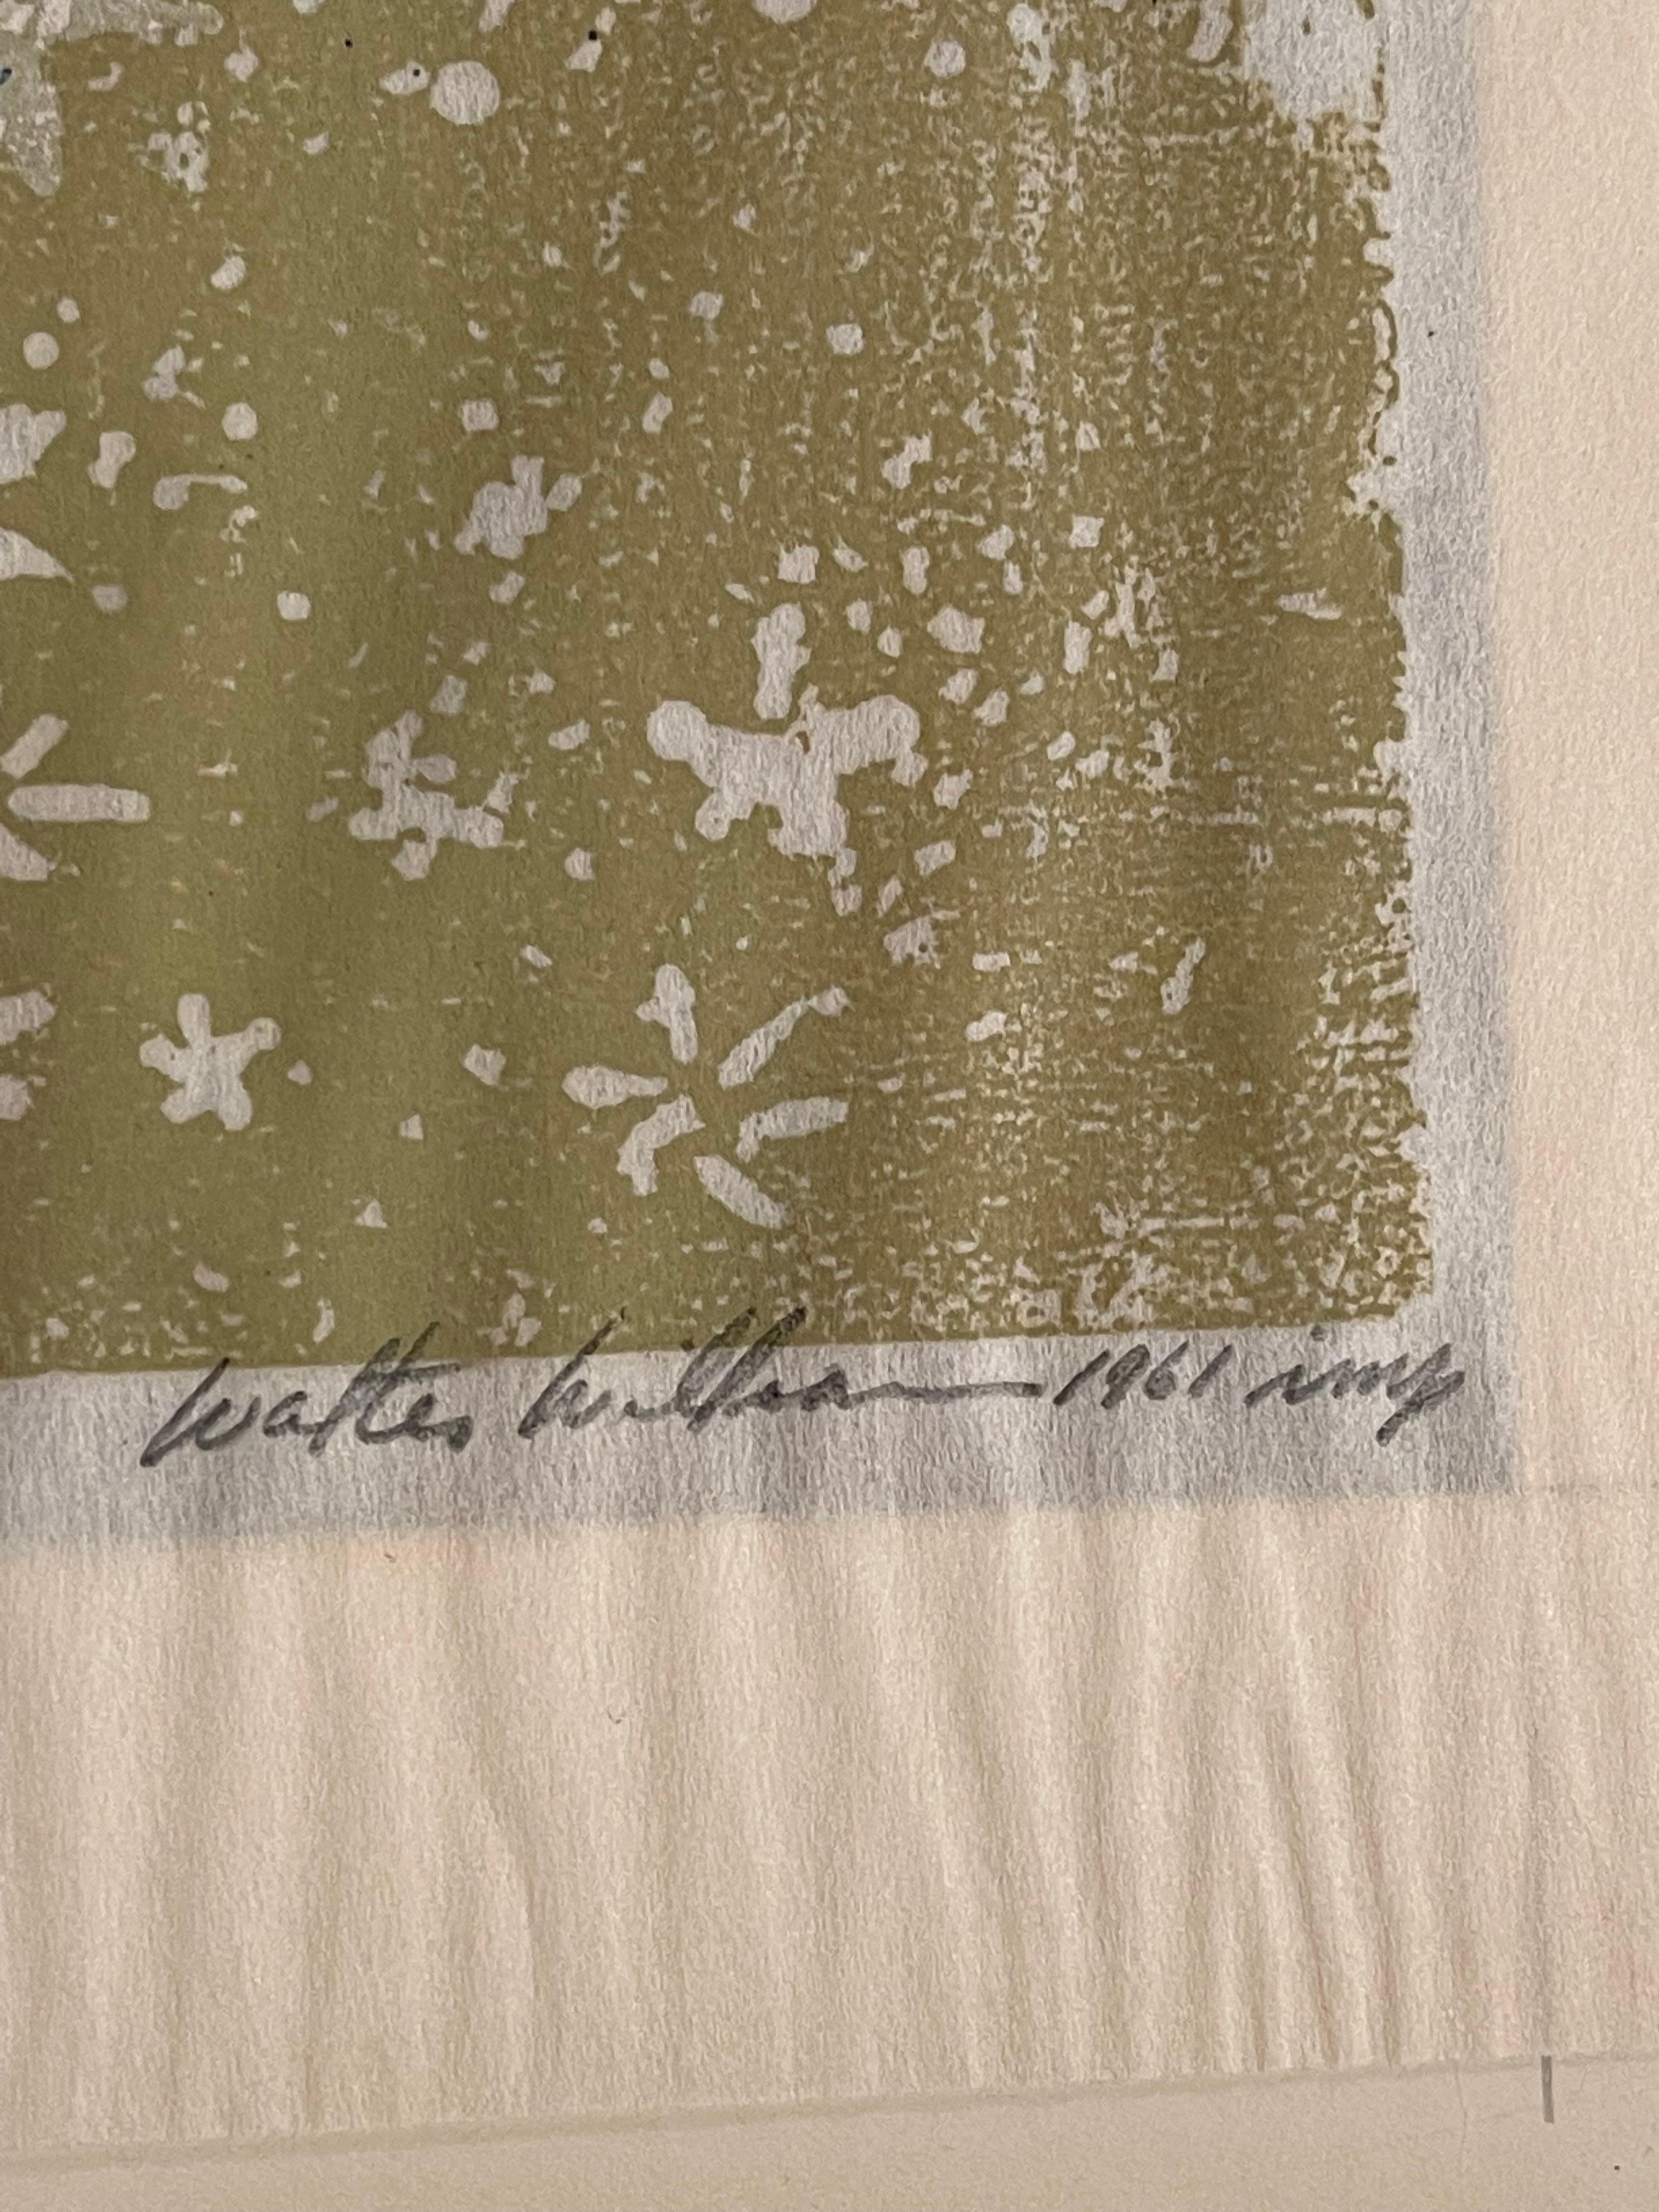 Linoléum couleur découpé sur du papier fin imitation Japon. Signé, titré, daté, inscrit 